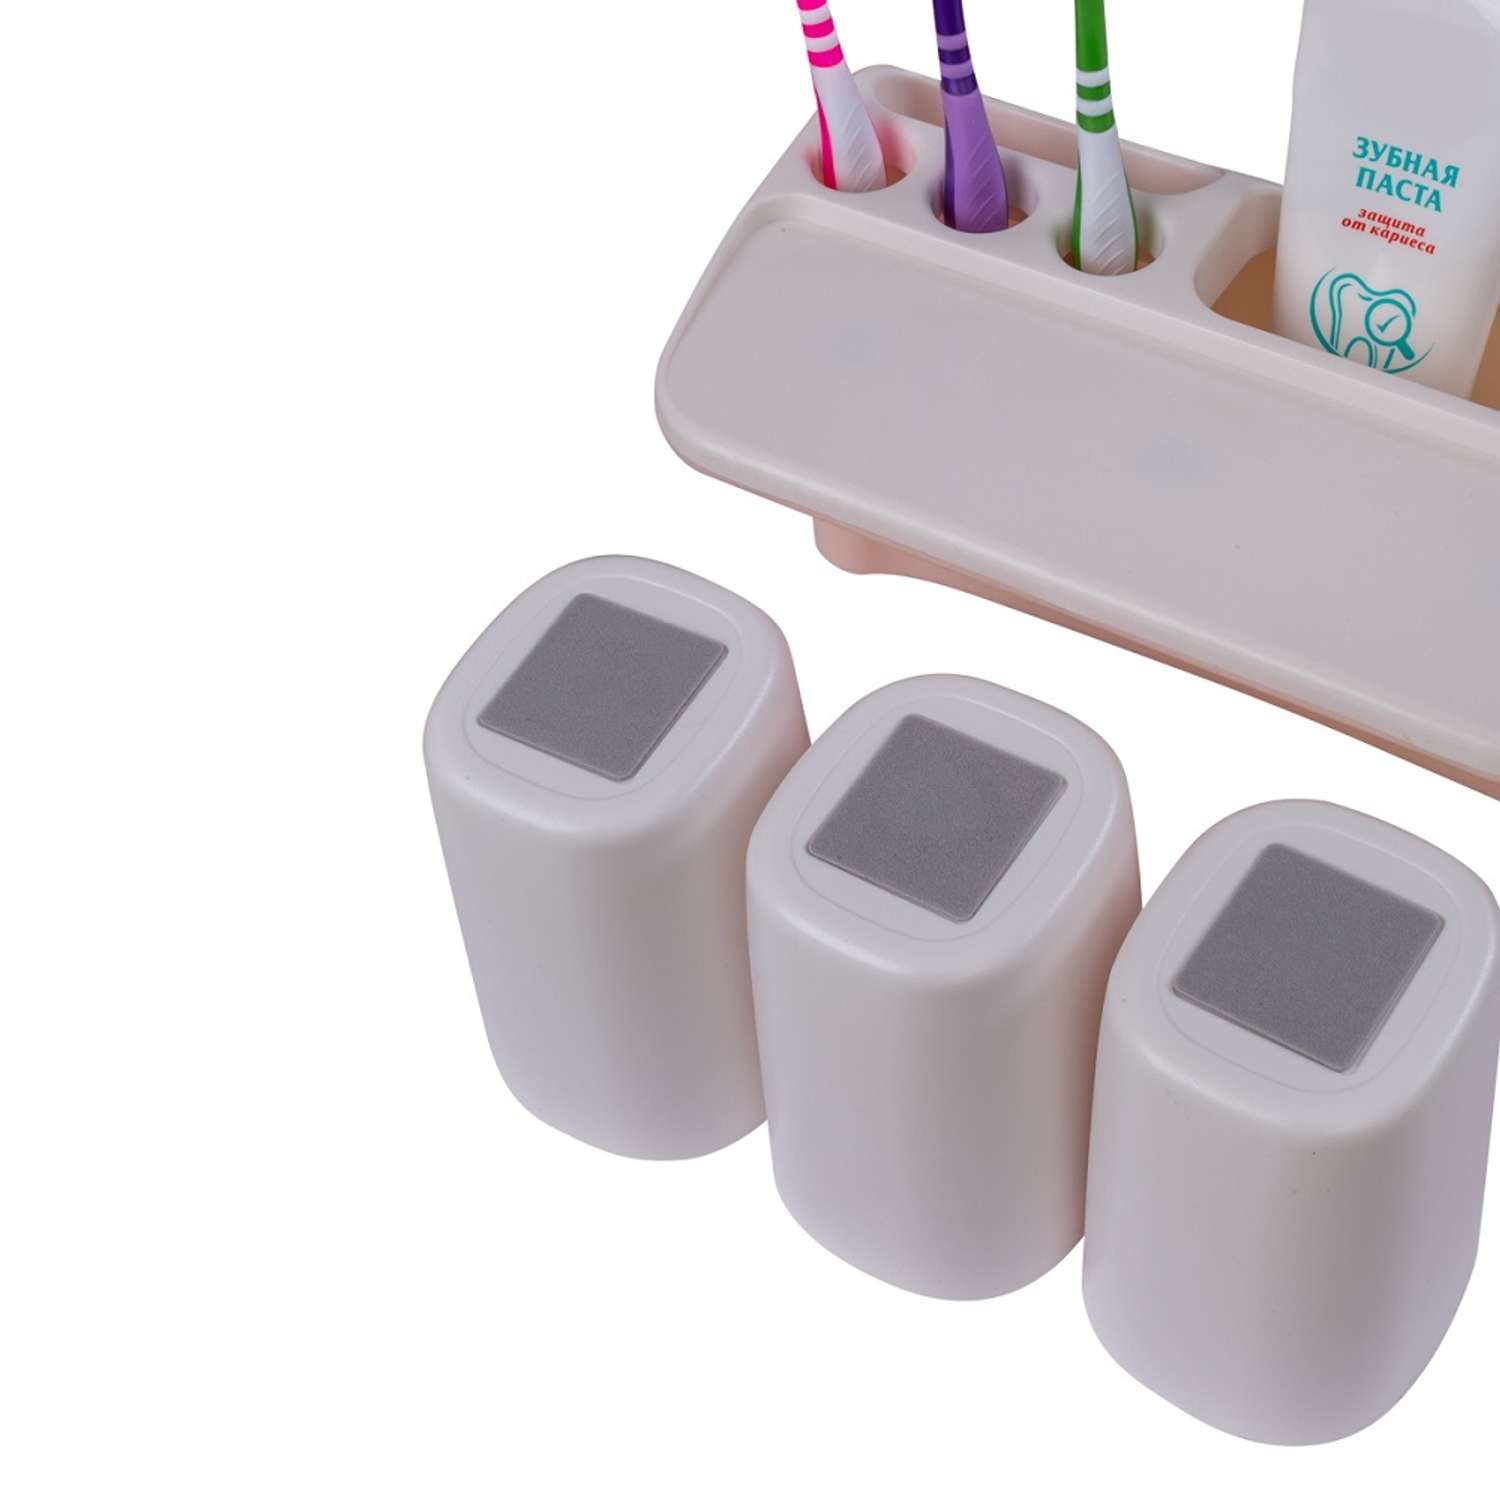 Диспенсер OLSA-Aijiawang для зубных щеток 3 в 1 настенный магнитный 3 стакана розовый - фото 4